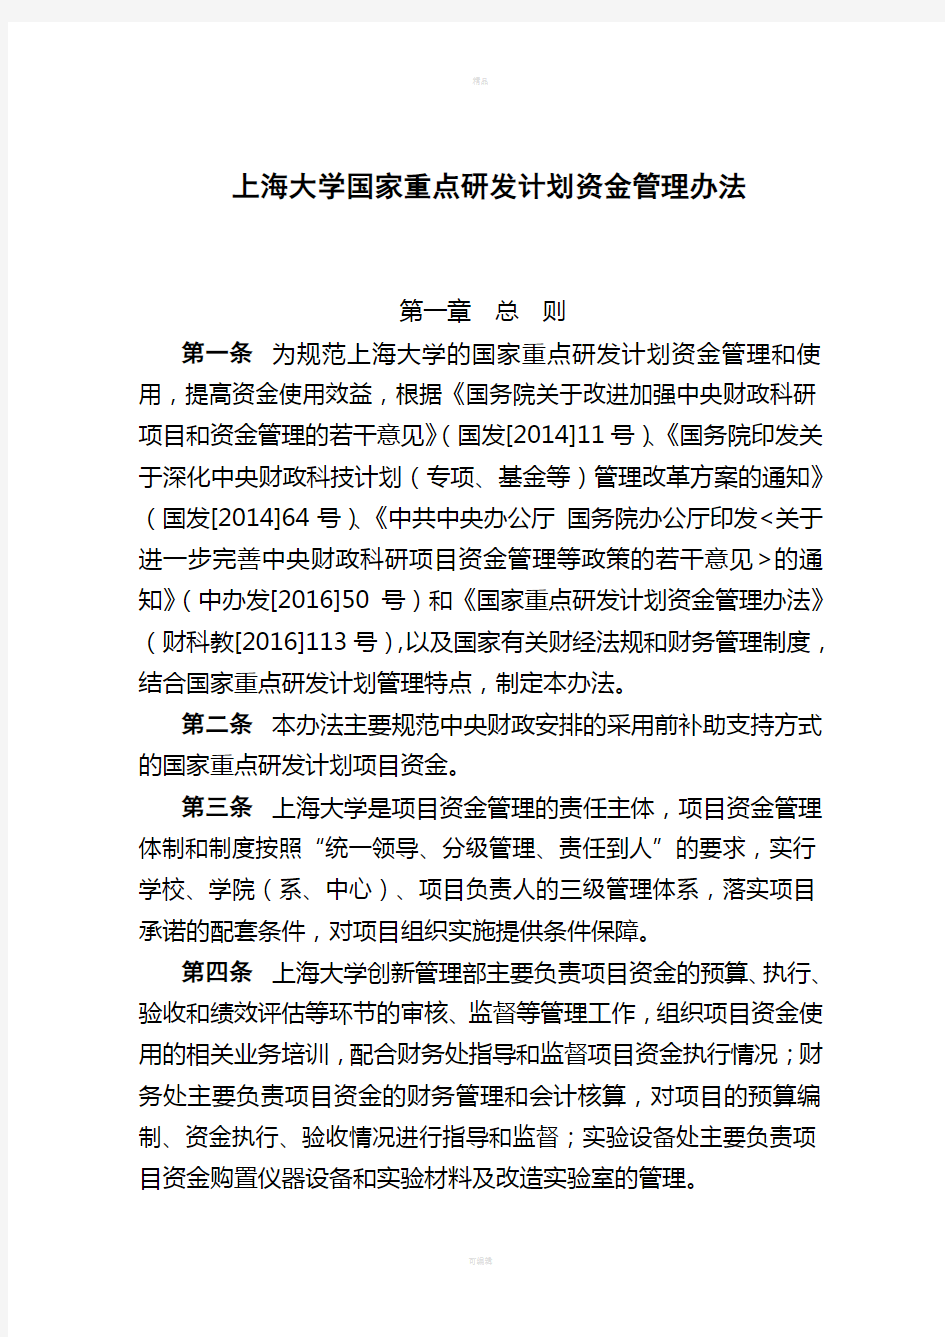 上海大学国家重点研发计划资金管理办法